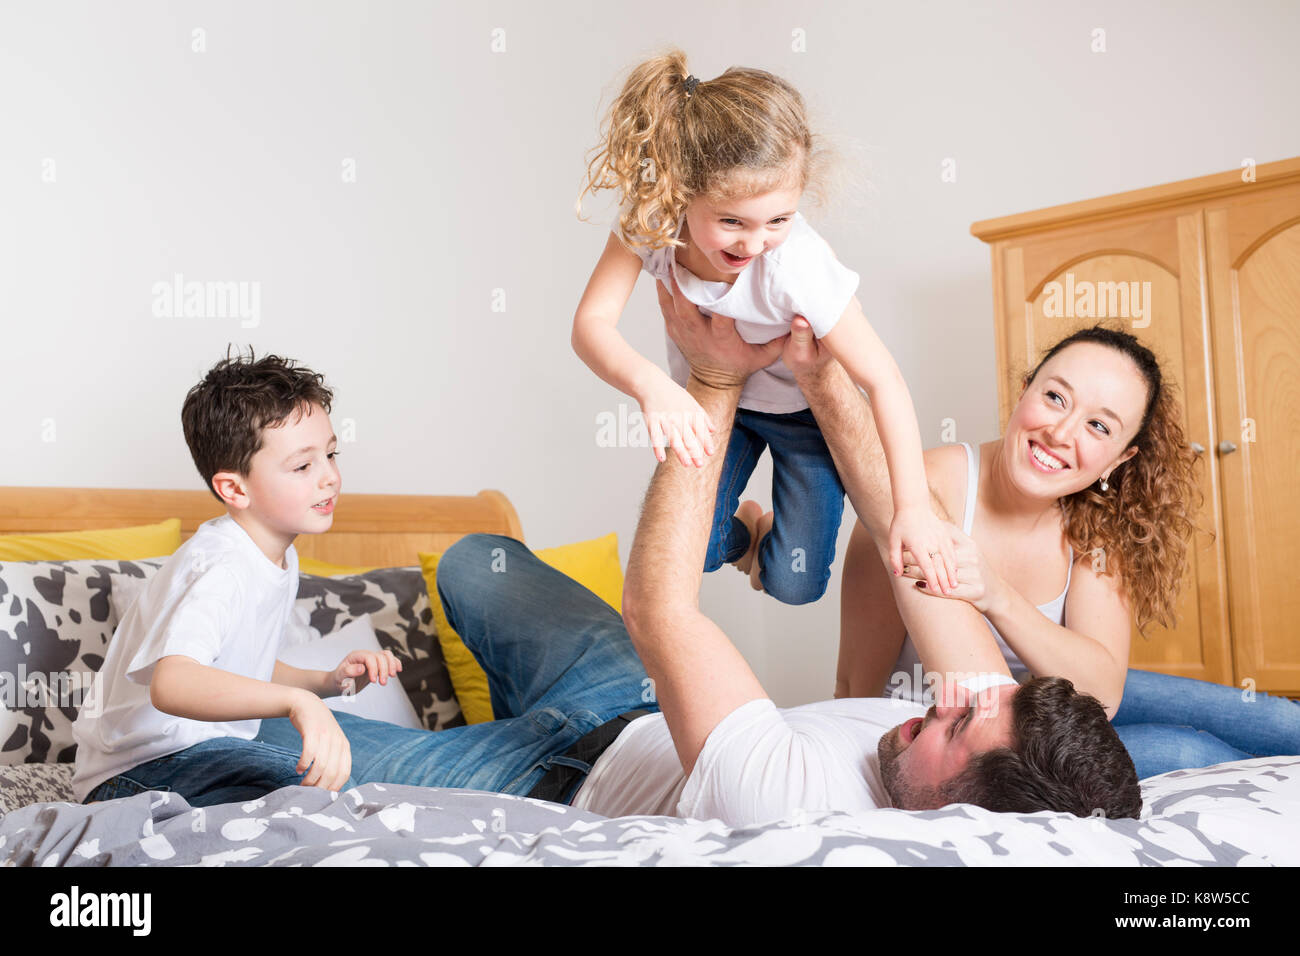 Famille, enfants et accueil concept - heureux en famille avec deux enfants de moins à la maison générale Banque D'Images